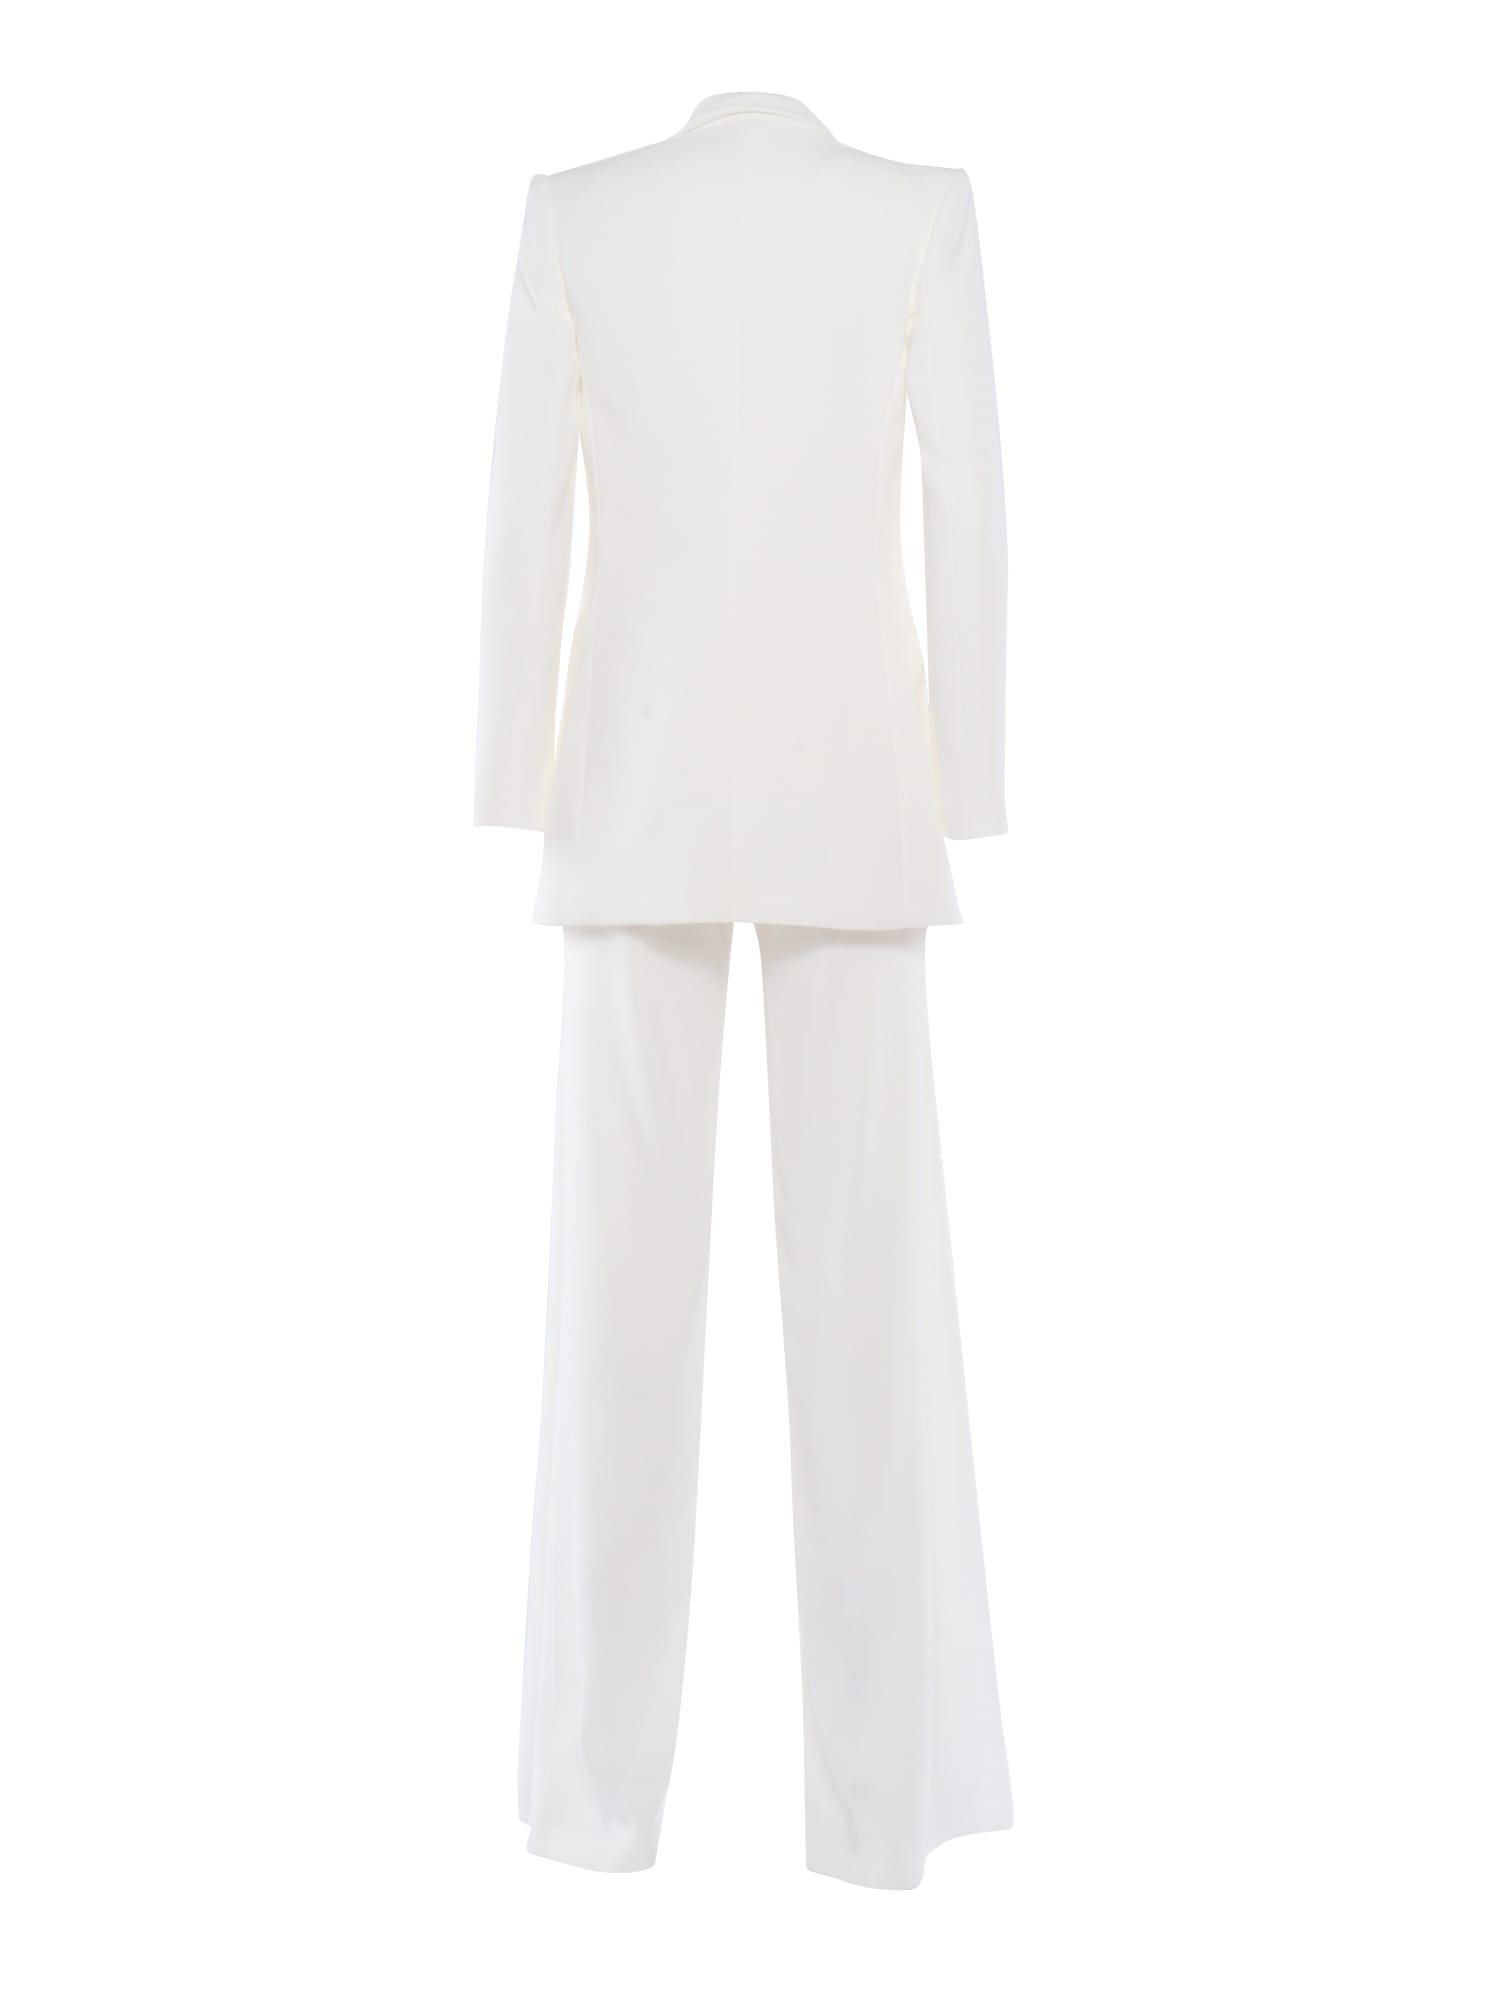 Shop Elisabetta Franchi Elegant White Suit